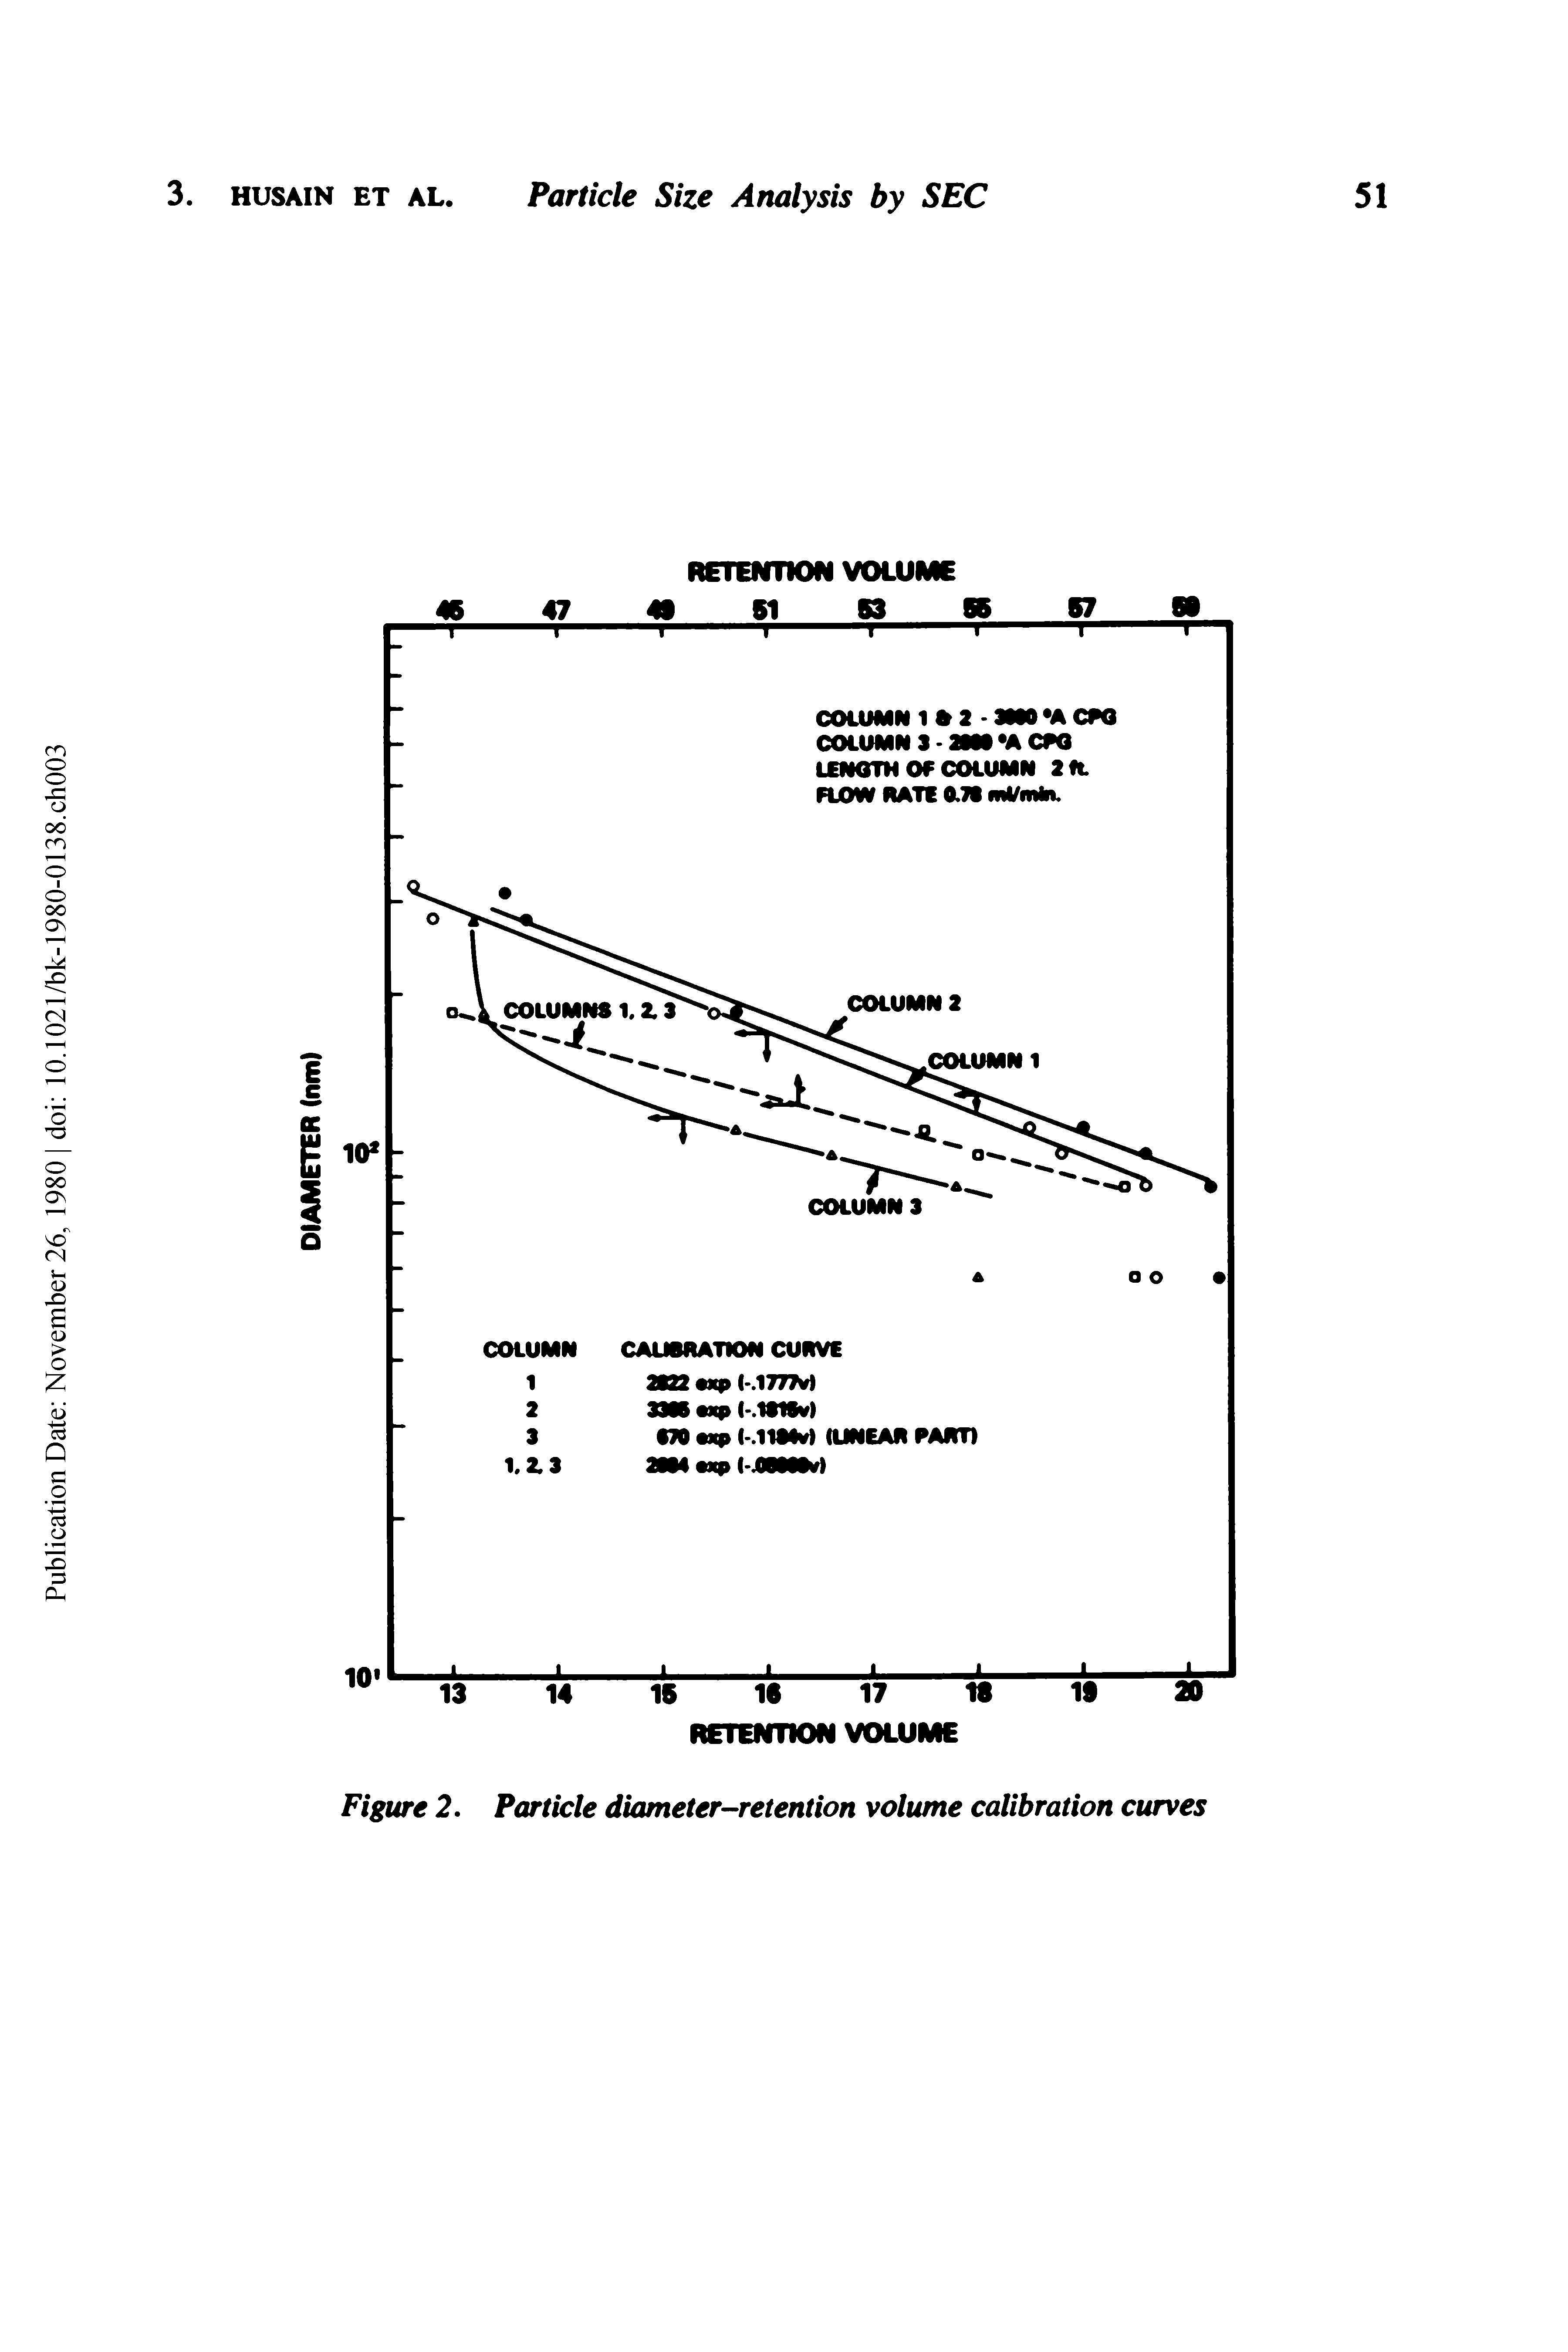 Figure 2. Particle diameter-retention volume calibration curves...